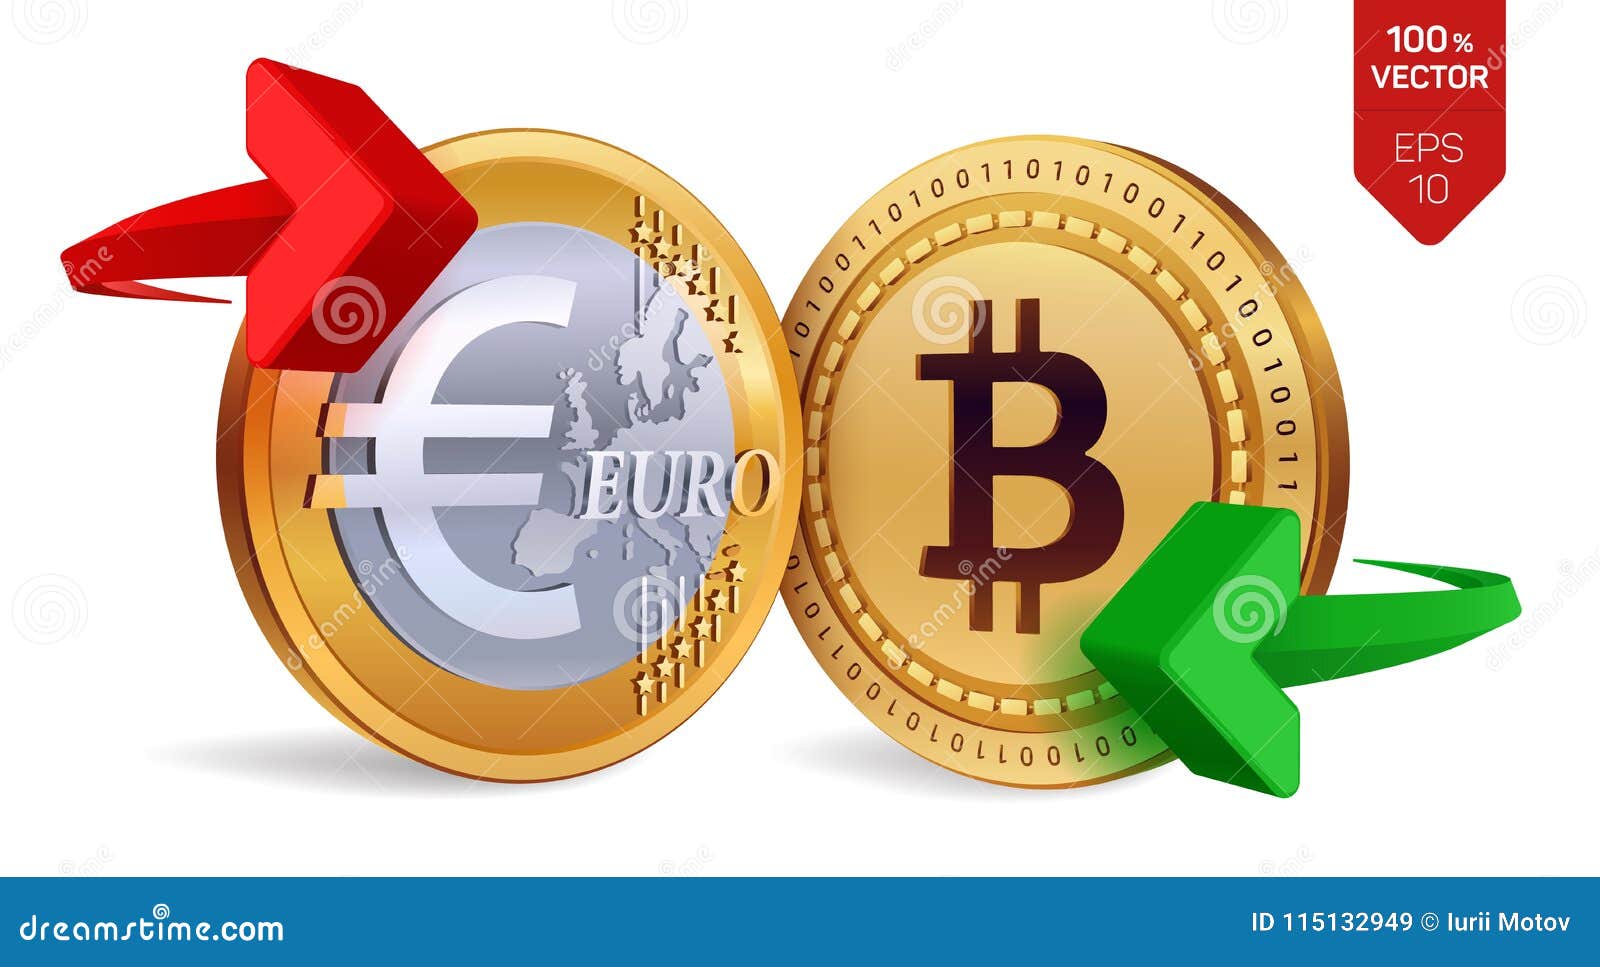 10 bitcoin iki euro ncx crypto